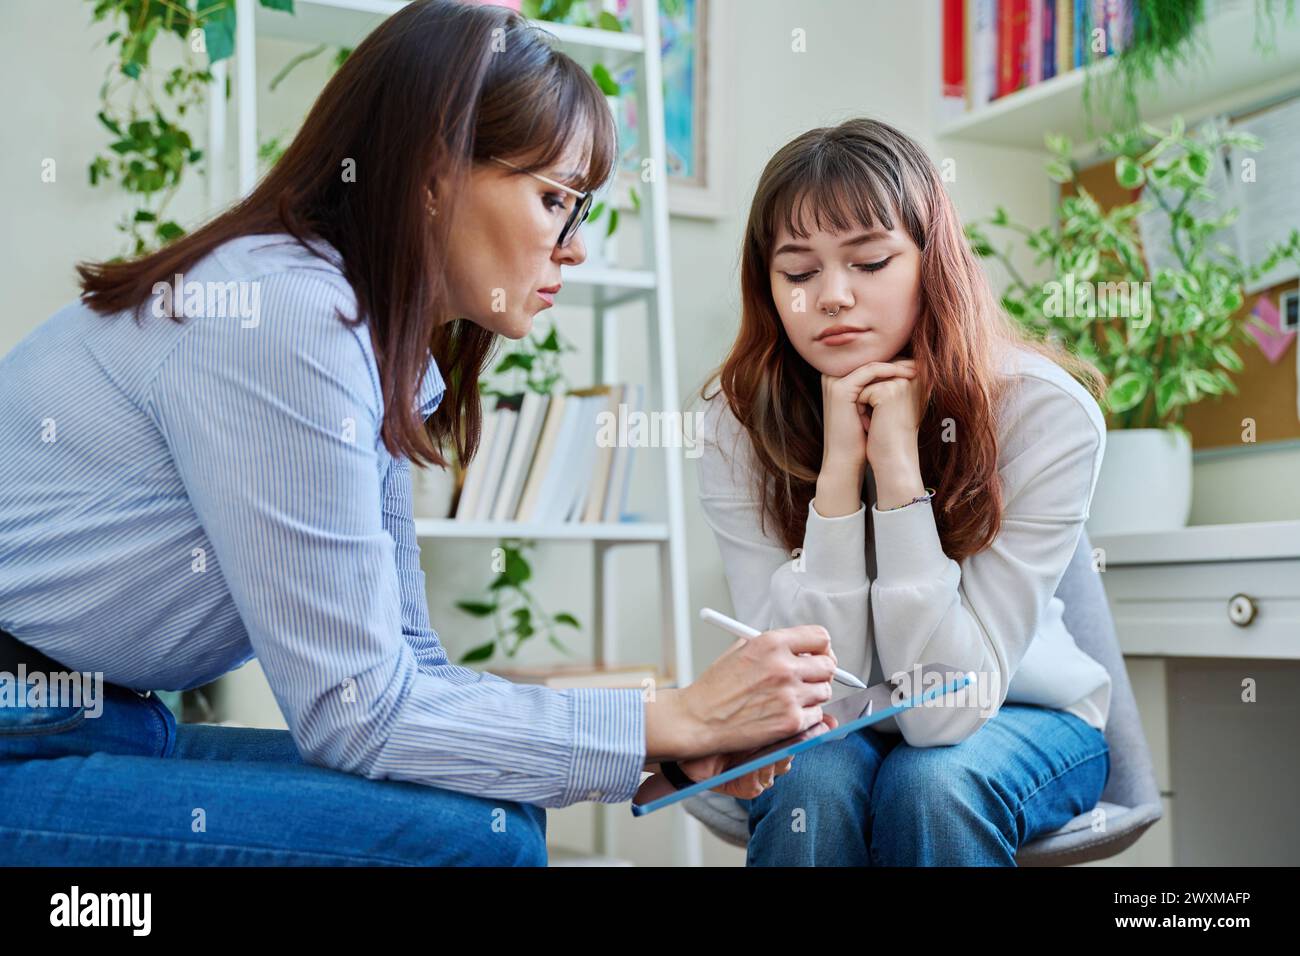 Trauriges, ernsthaftes Teenager-Mädchen bei der Sitzung im Büro des Psychiaters Stockfoto